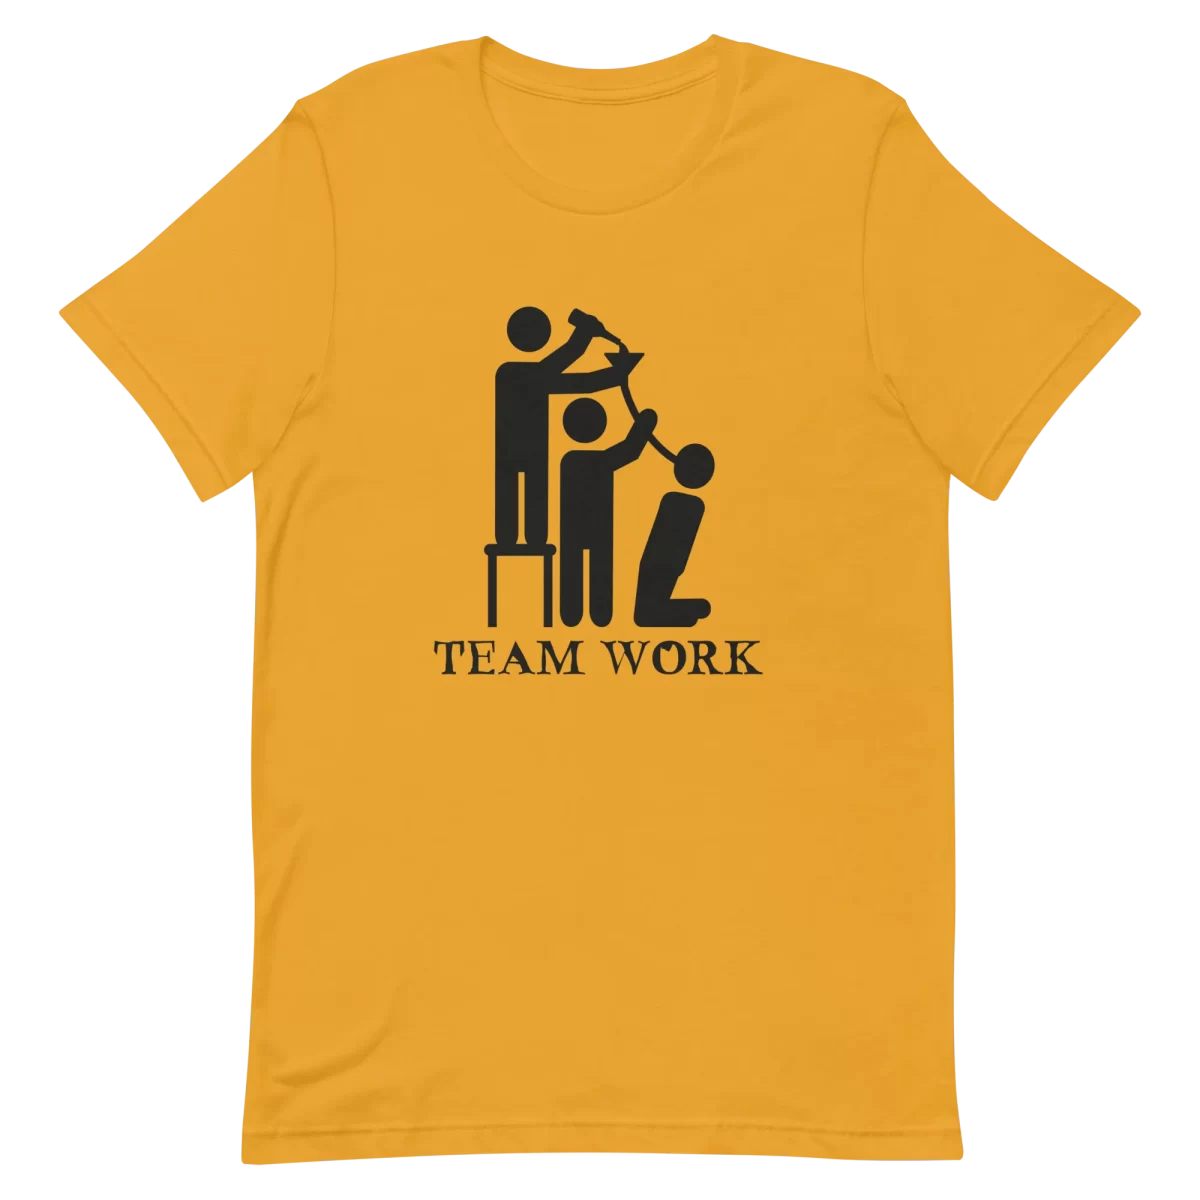 Unisex T-Shirt - Team Work - Mustard